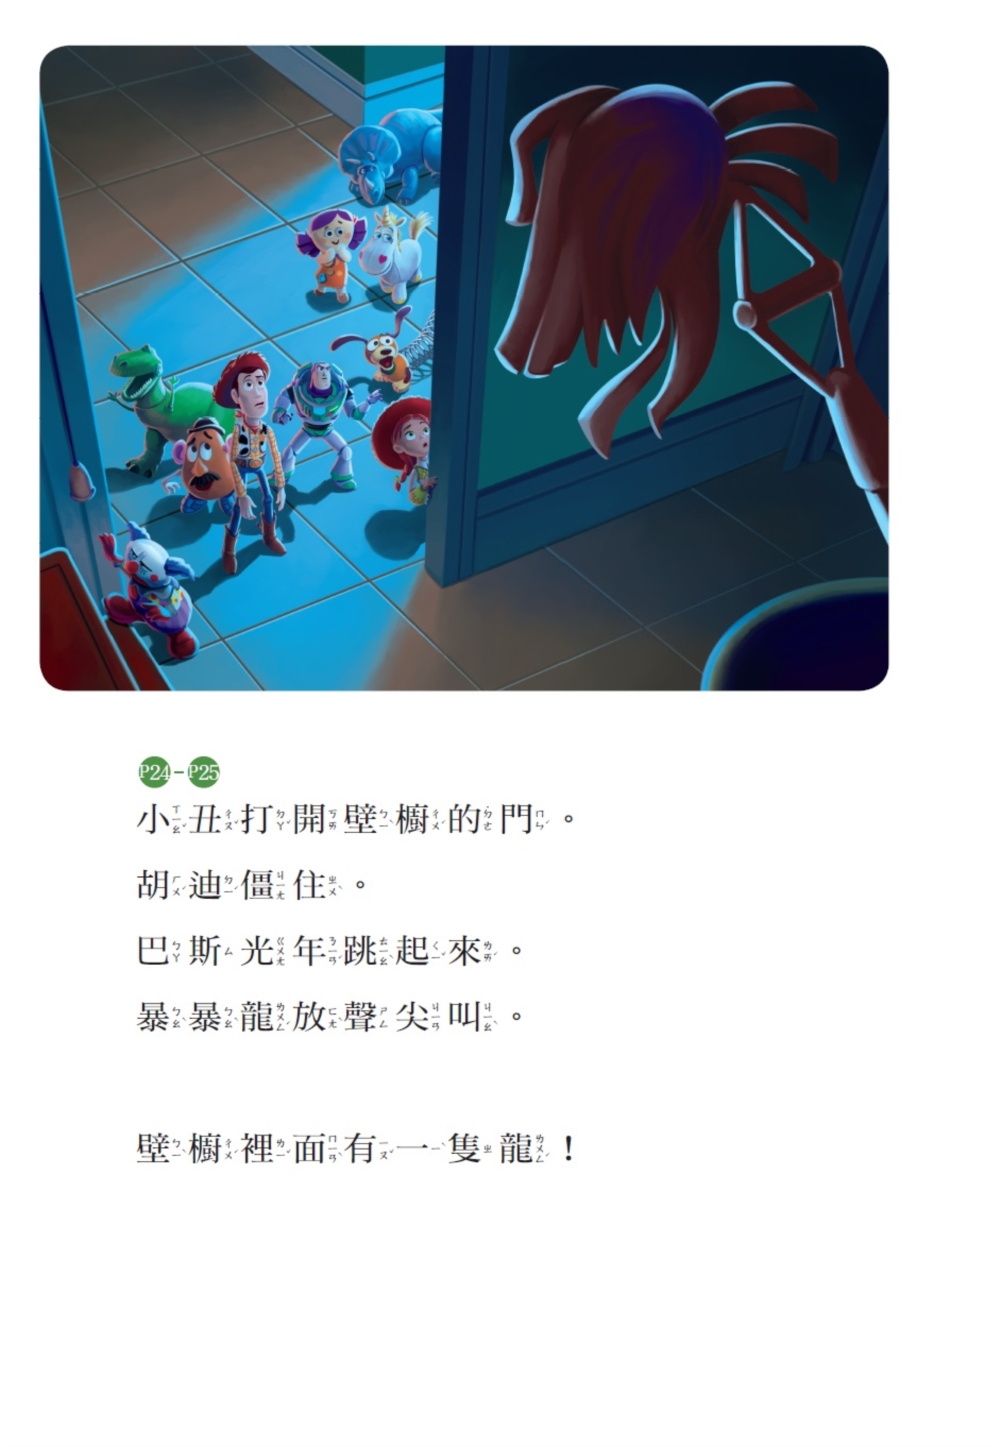 玩具總動員：驚恐冒險 迪士尼雙語繪本STEP 2